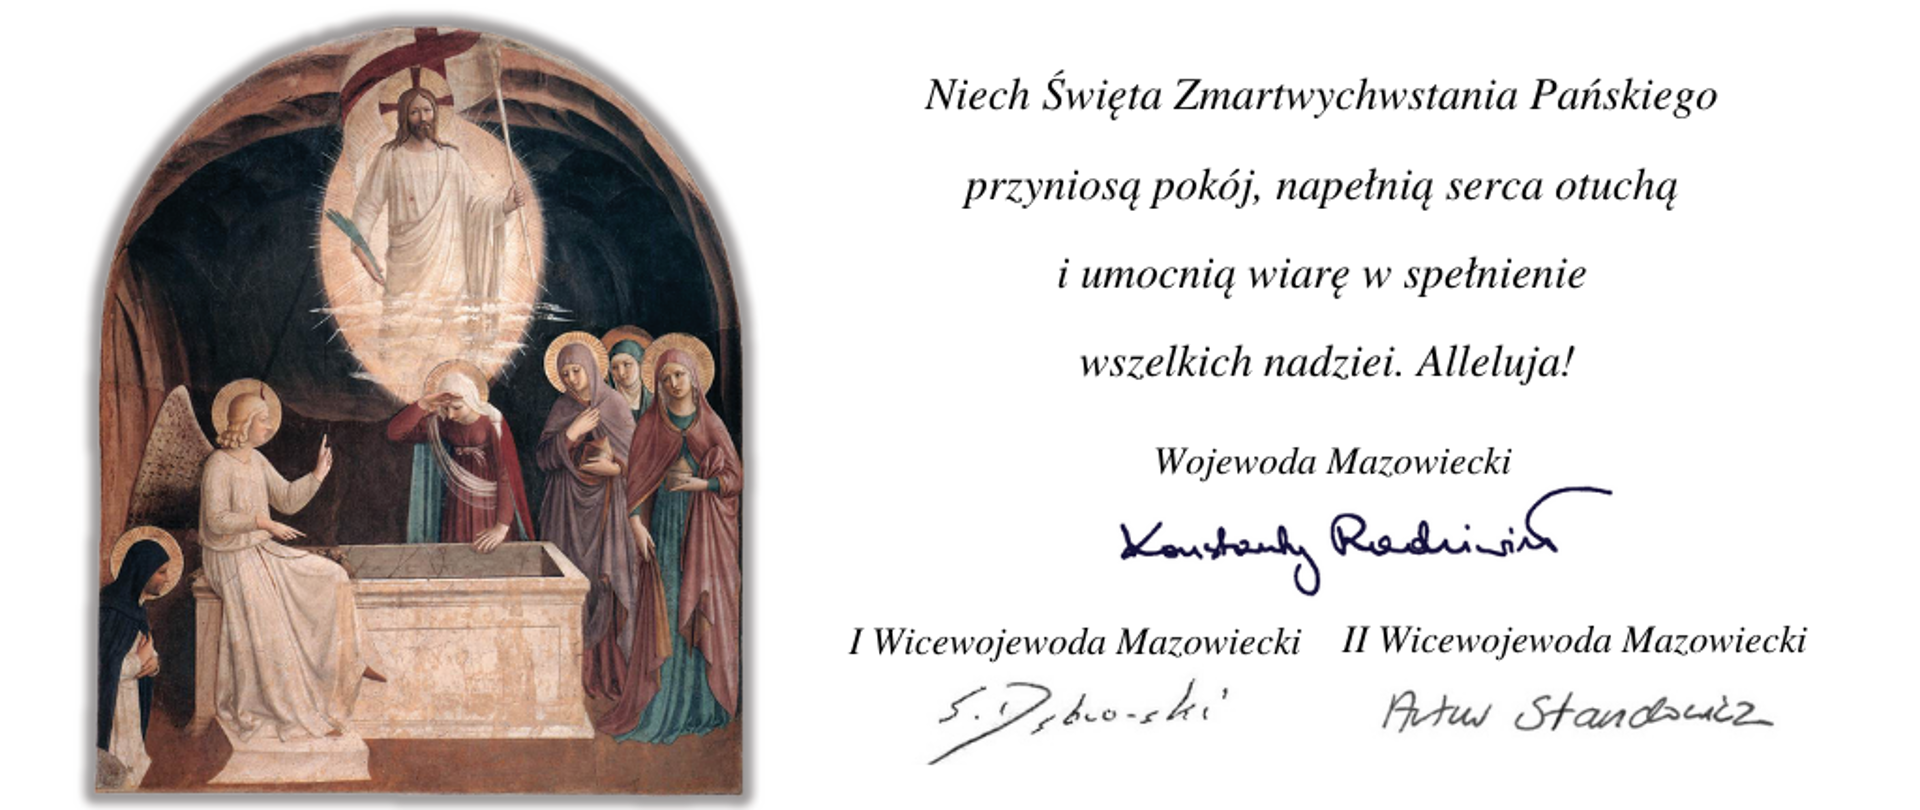 Życzenia Wojewody Konstantego Radziwiłła i Wicewojewodów Sylwestra Dąbrowskiego i Artura Standowicza z okazji Świąt Wielkanocnych. 